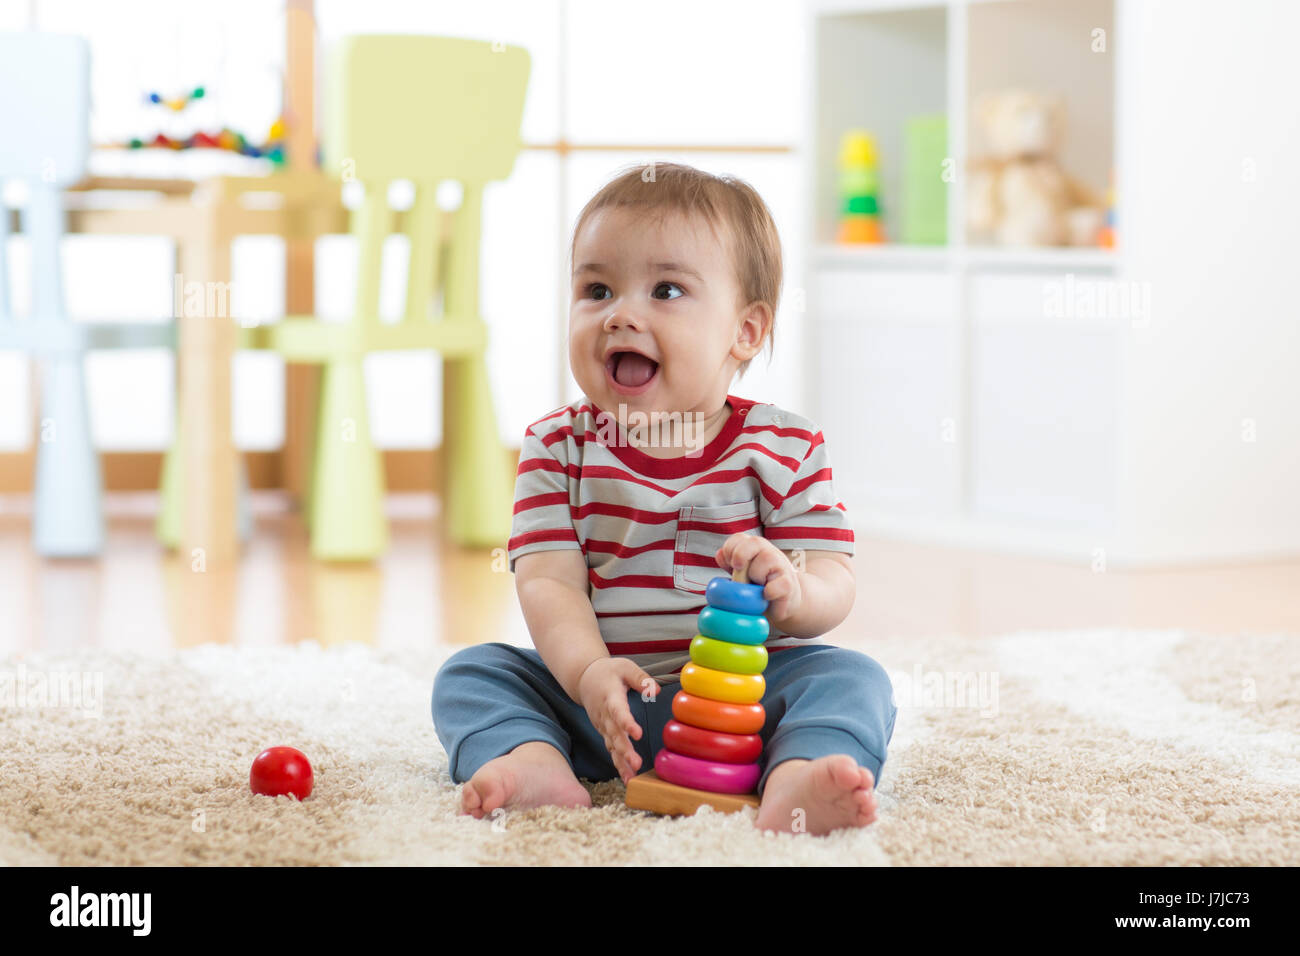 Baby bambino che gioca con la piramide educativa giocattoli a casa. Bambino divertirsi in ambienti interni Foto Stock